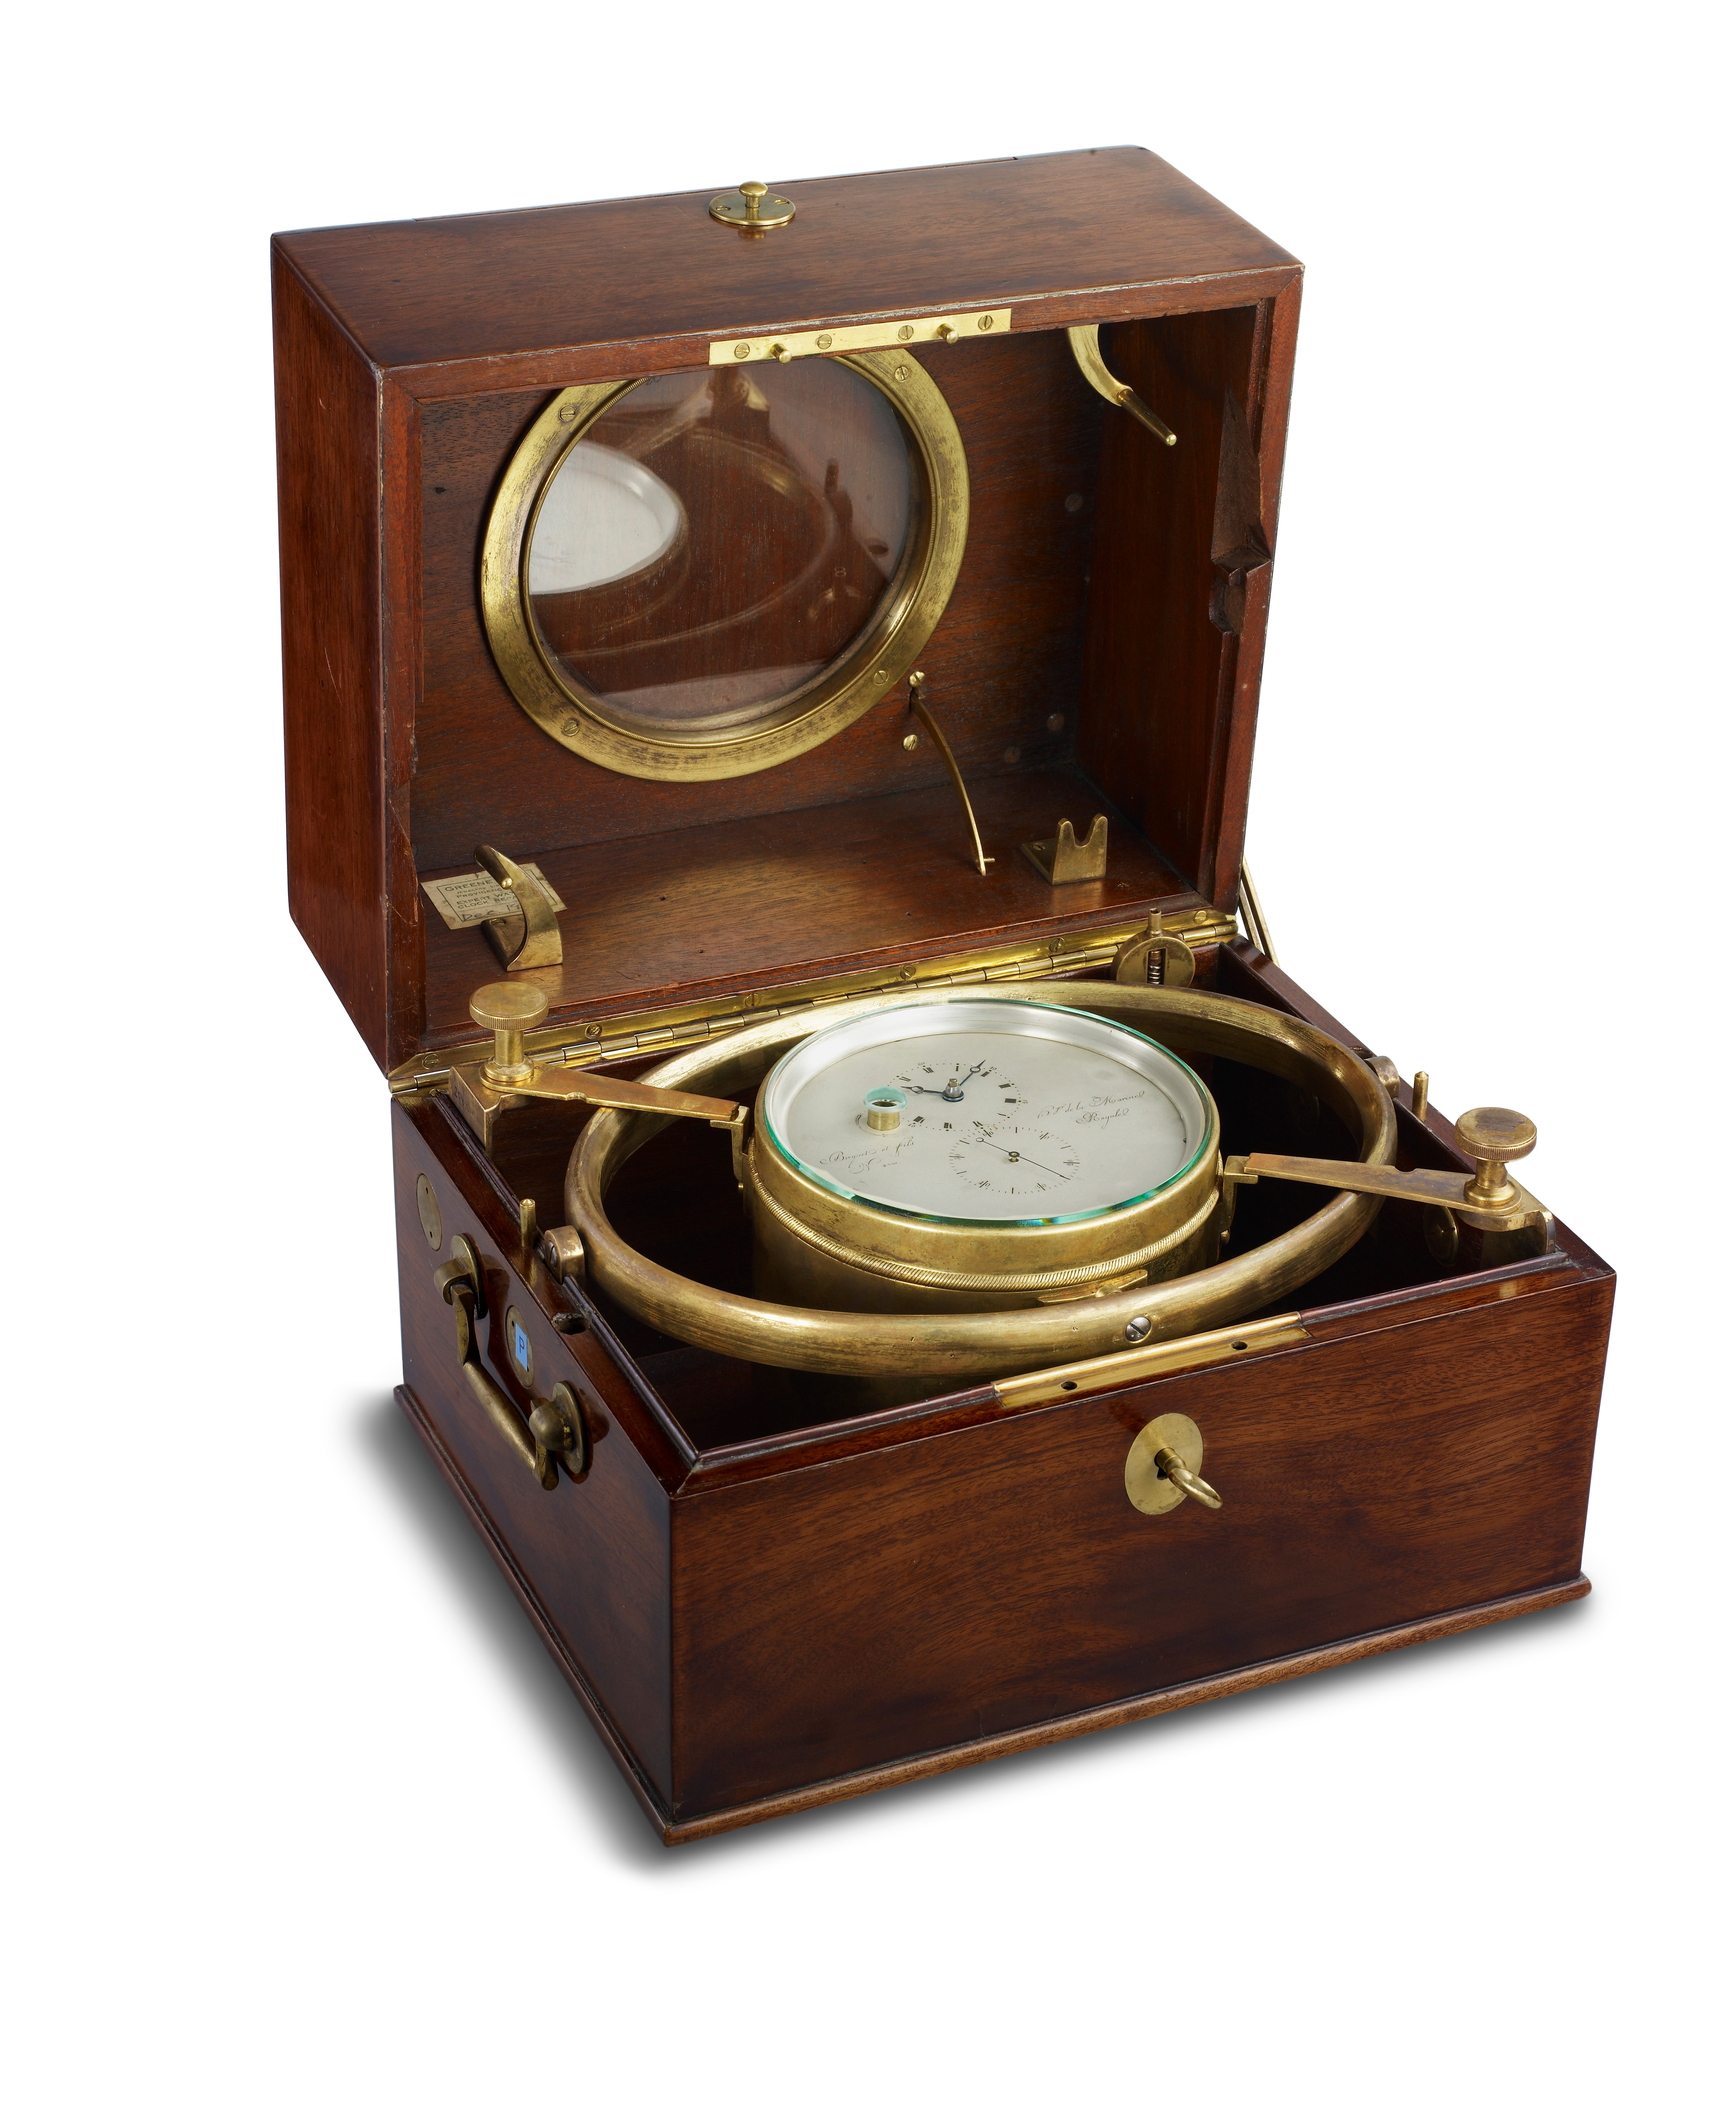 왕정 해군의 크로노미터 메이커(Chronometer-Maker to the Royal Navy)